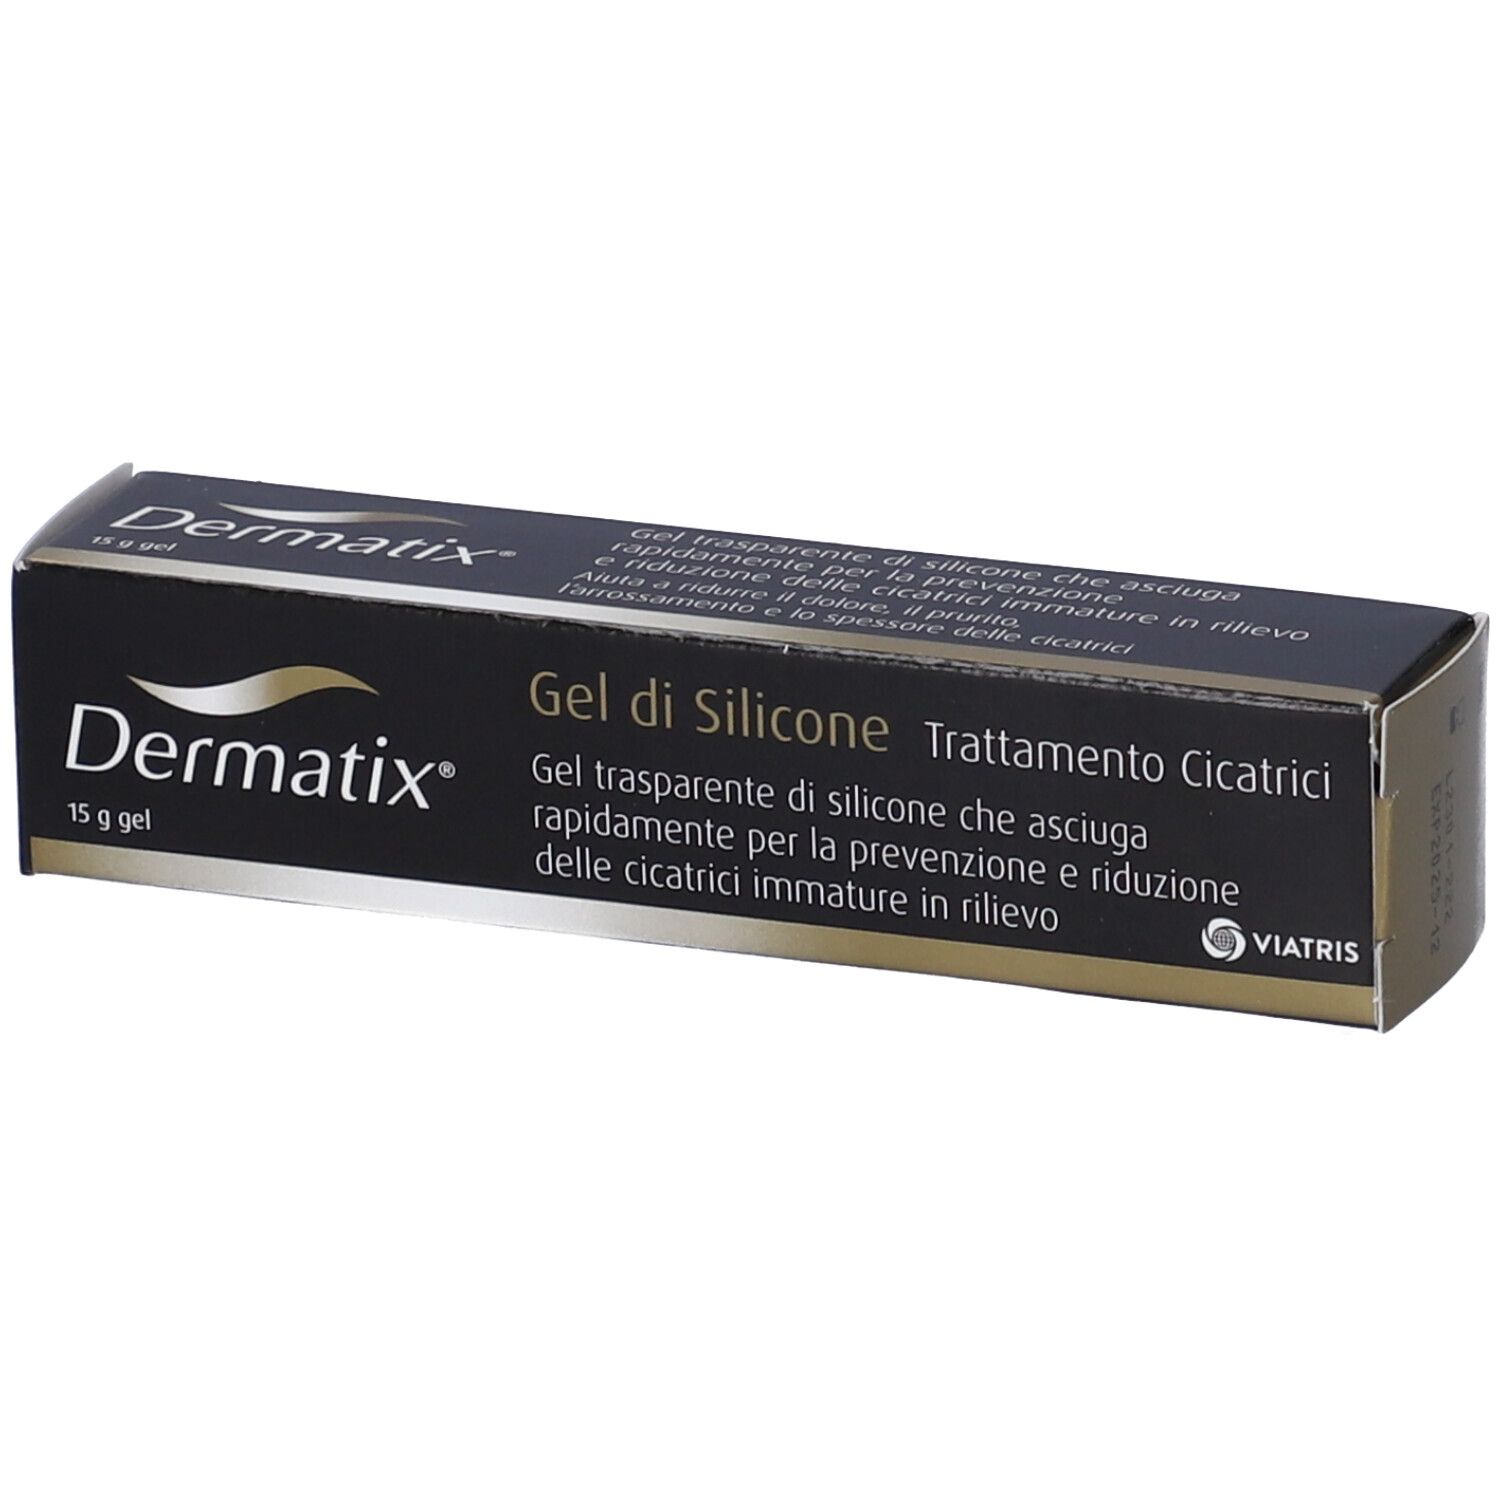 Dermatix® Gel di Silicone